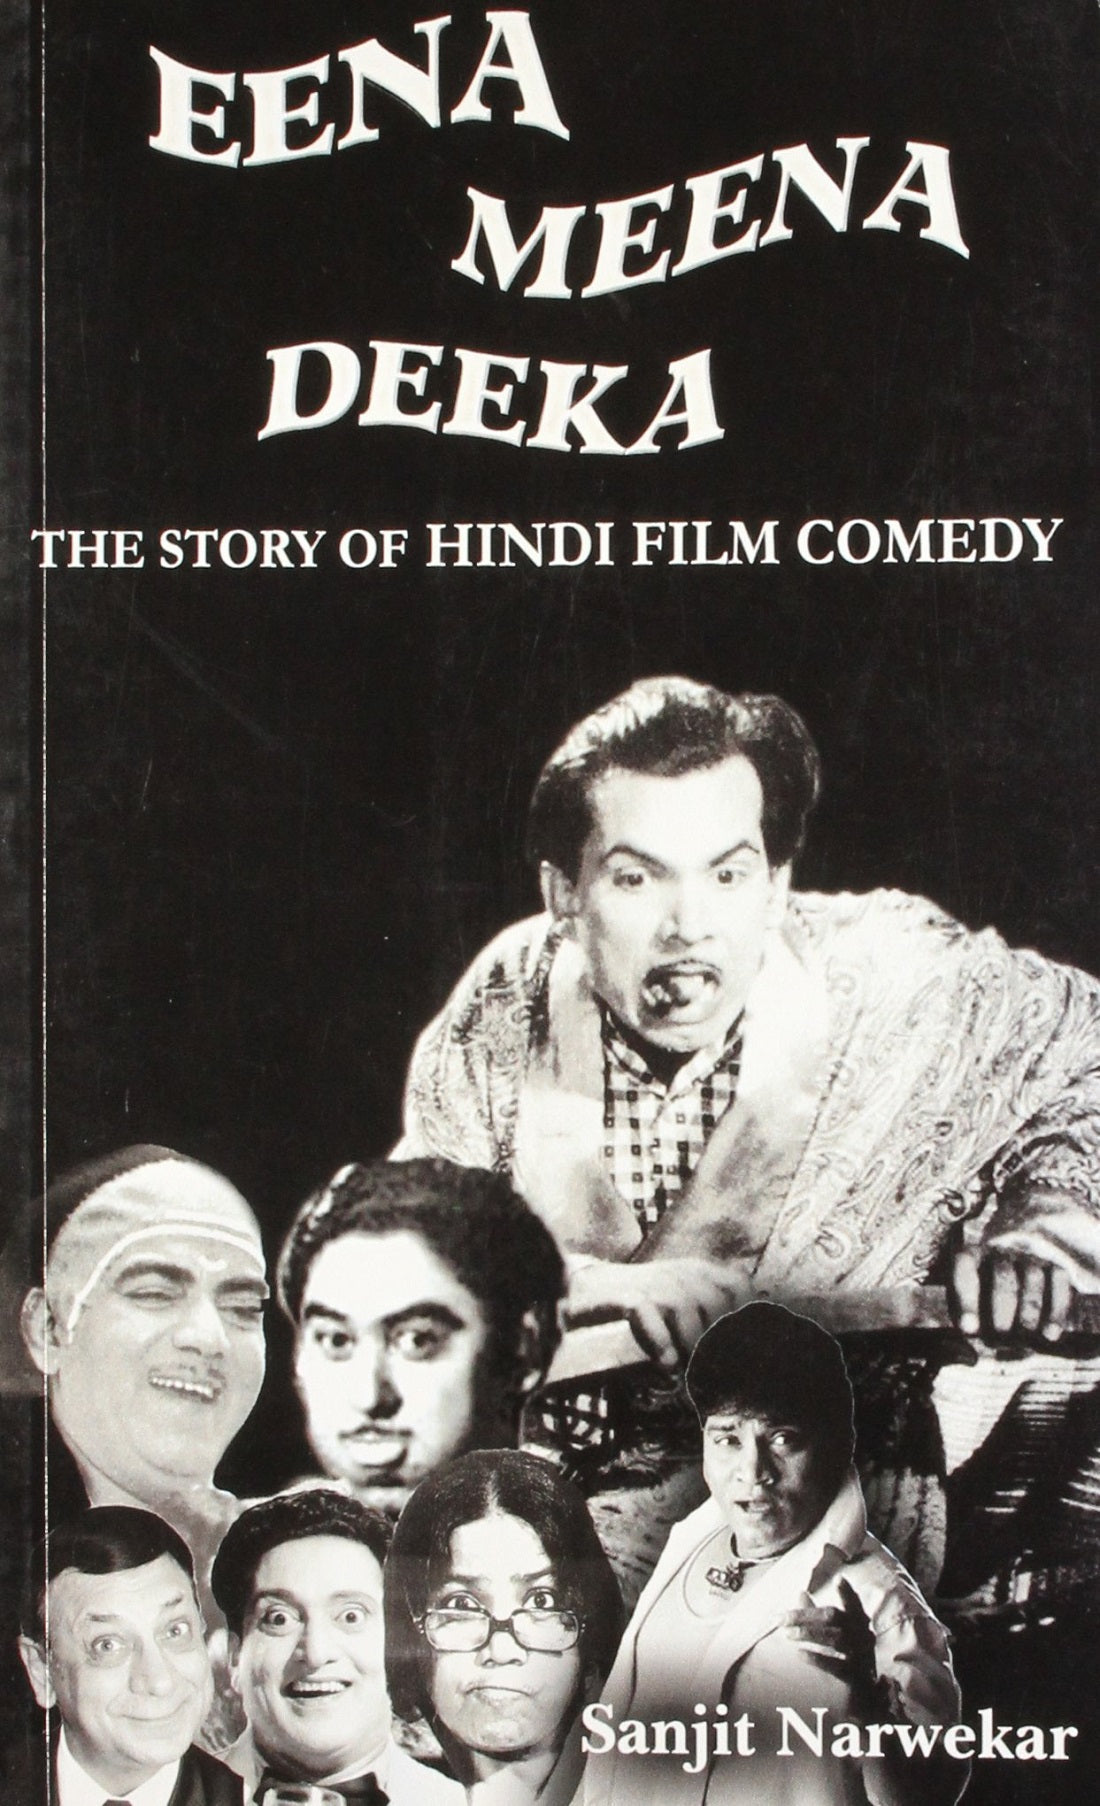 EENA MEENA DEEKA : THE STORY OF HINDI FILM COMEDY